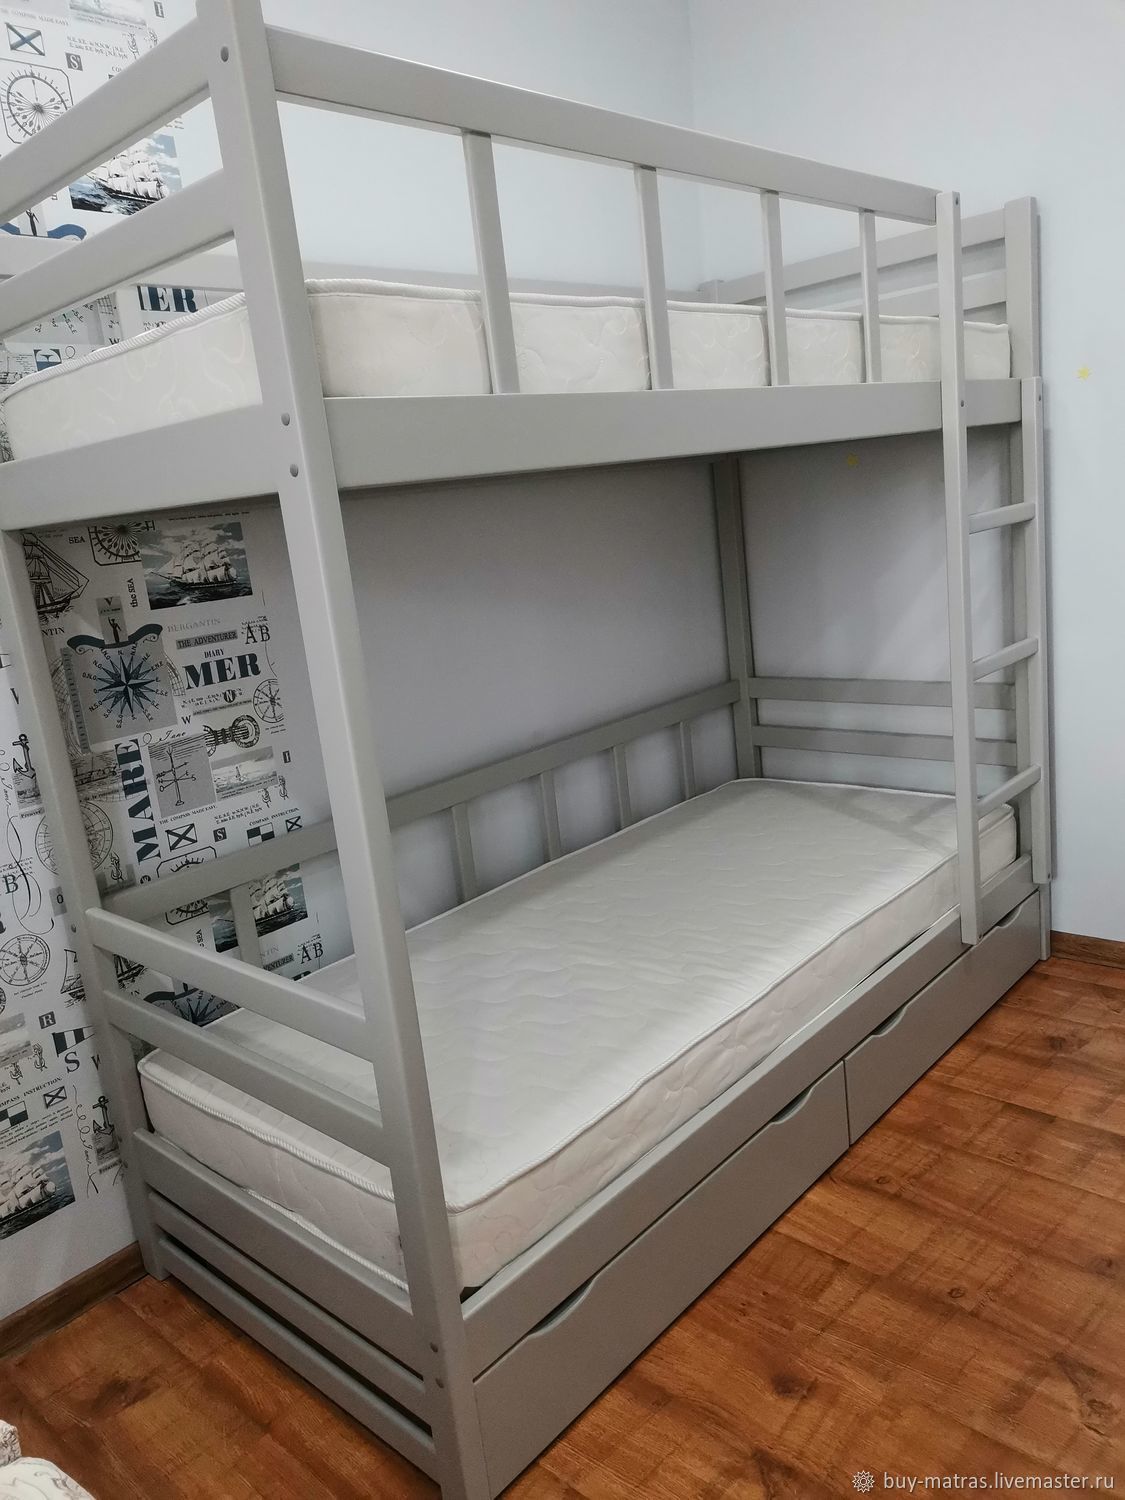 Двухъярусная Кровать Для Мальчиков Фото